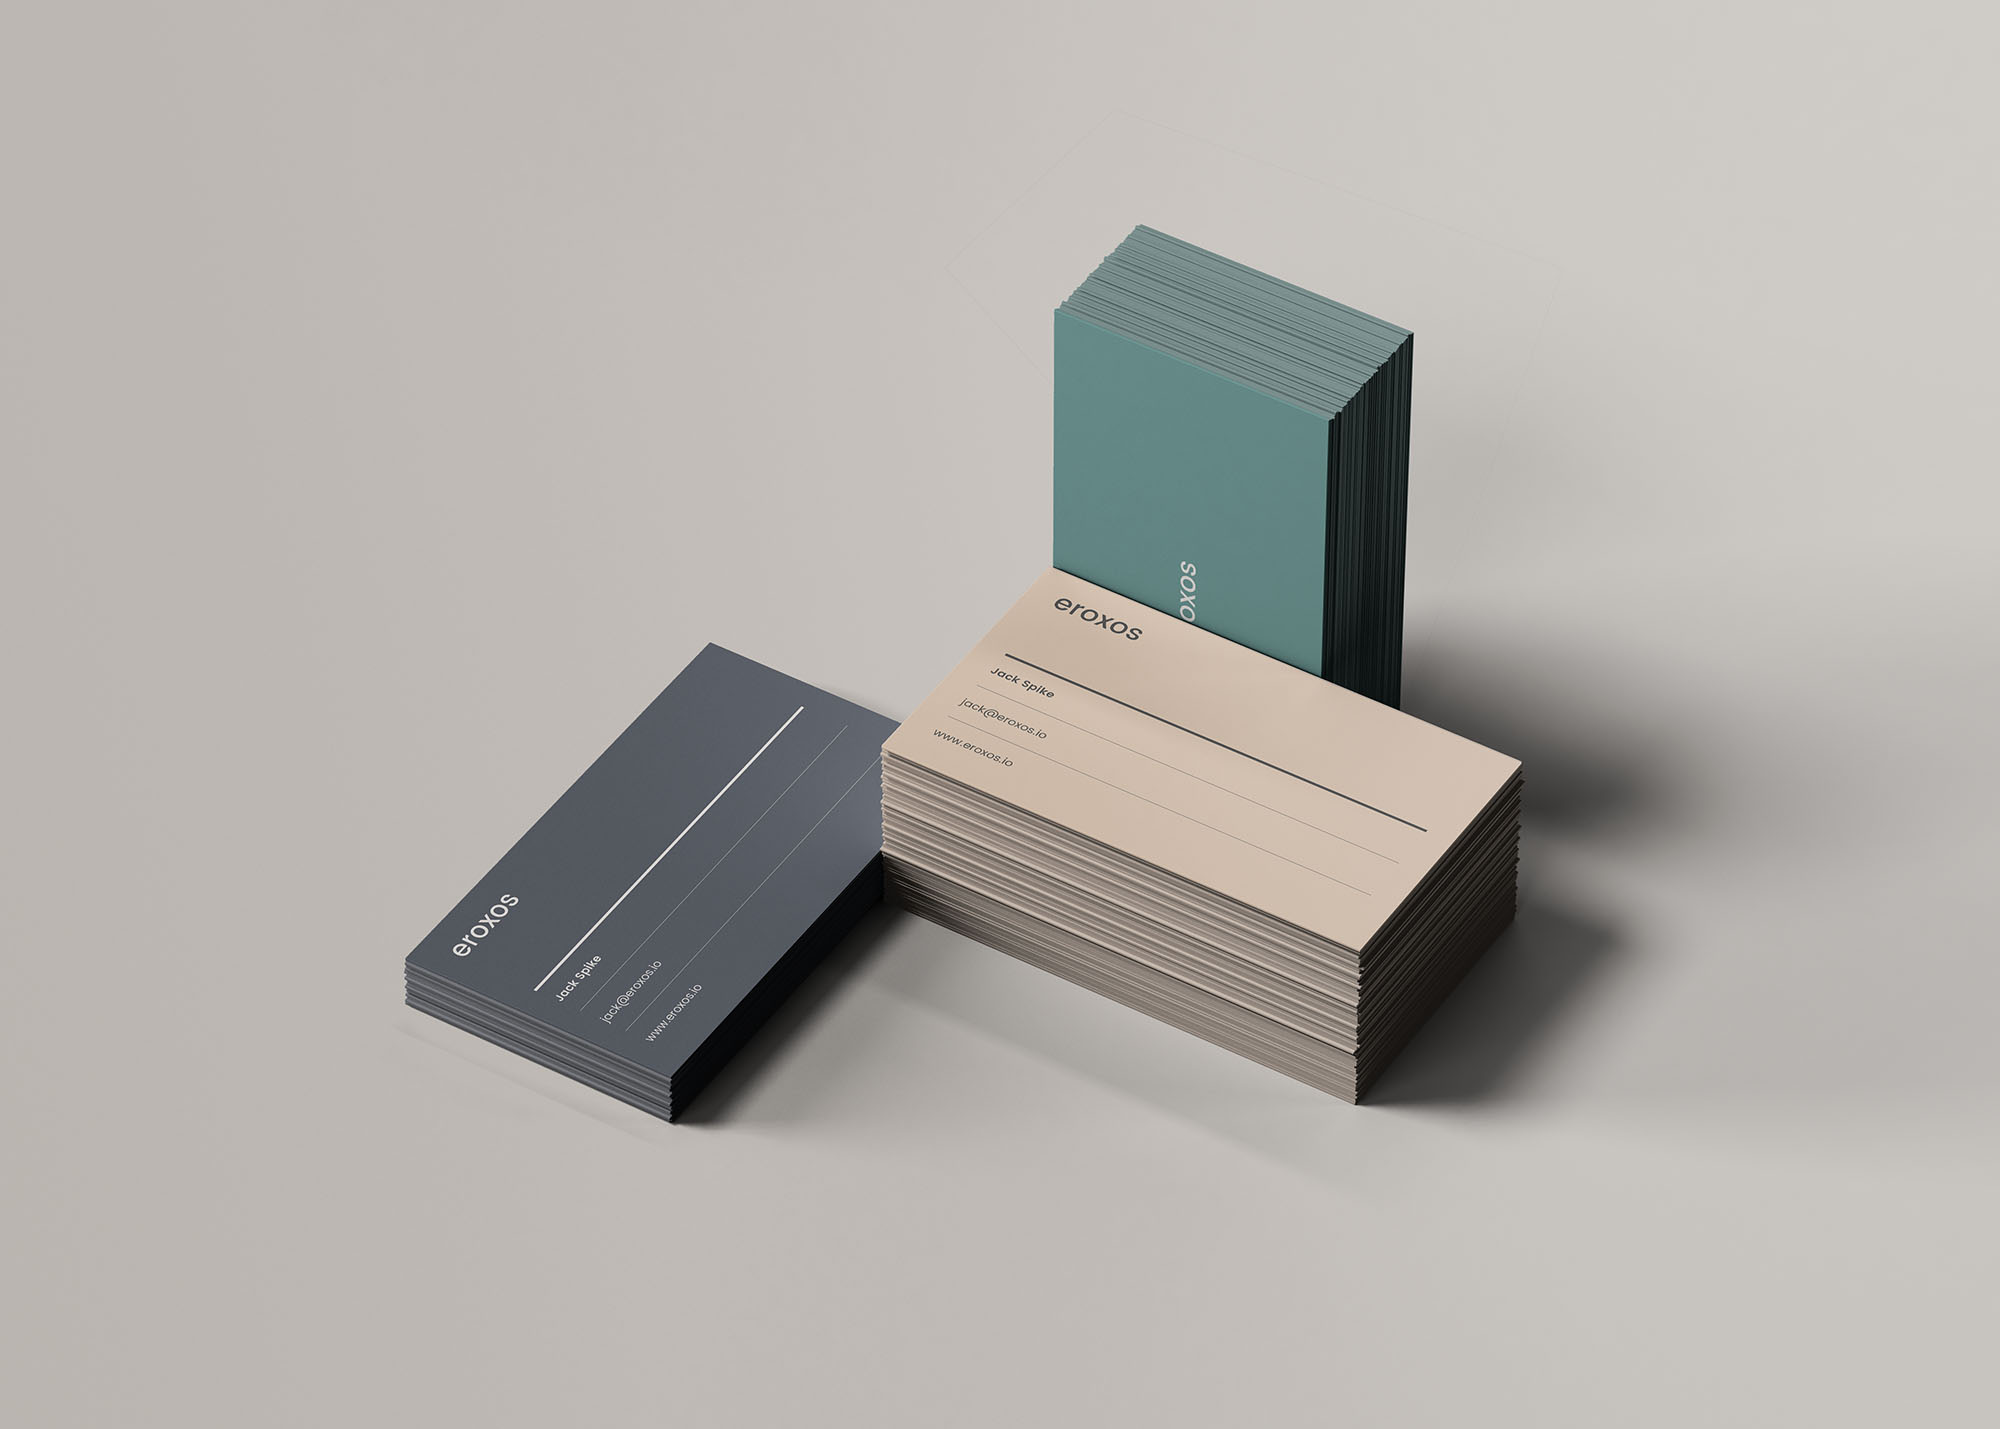 企业名片三种堆叠状态展示蚂蚁素材精选模板 3 Business Card Stacks Mockup插图